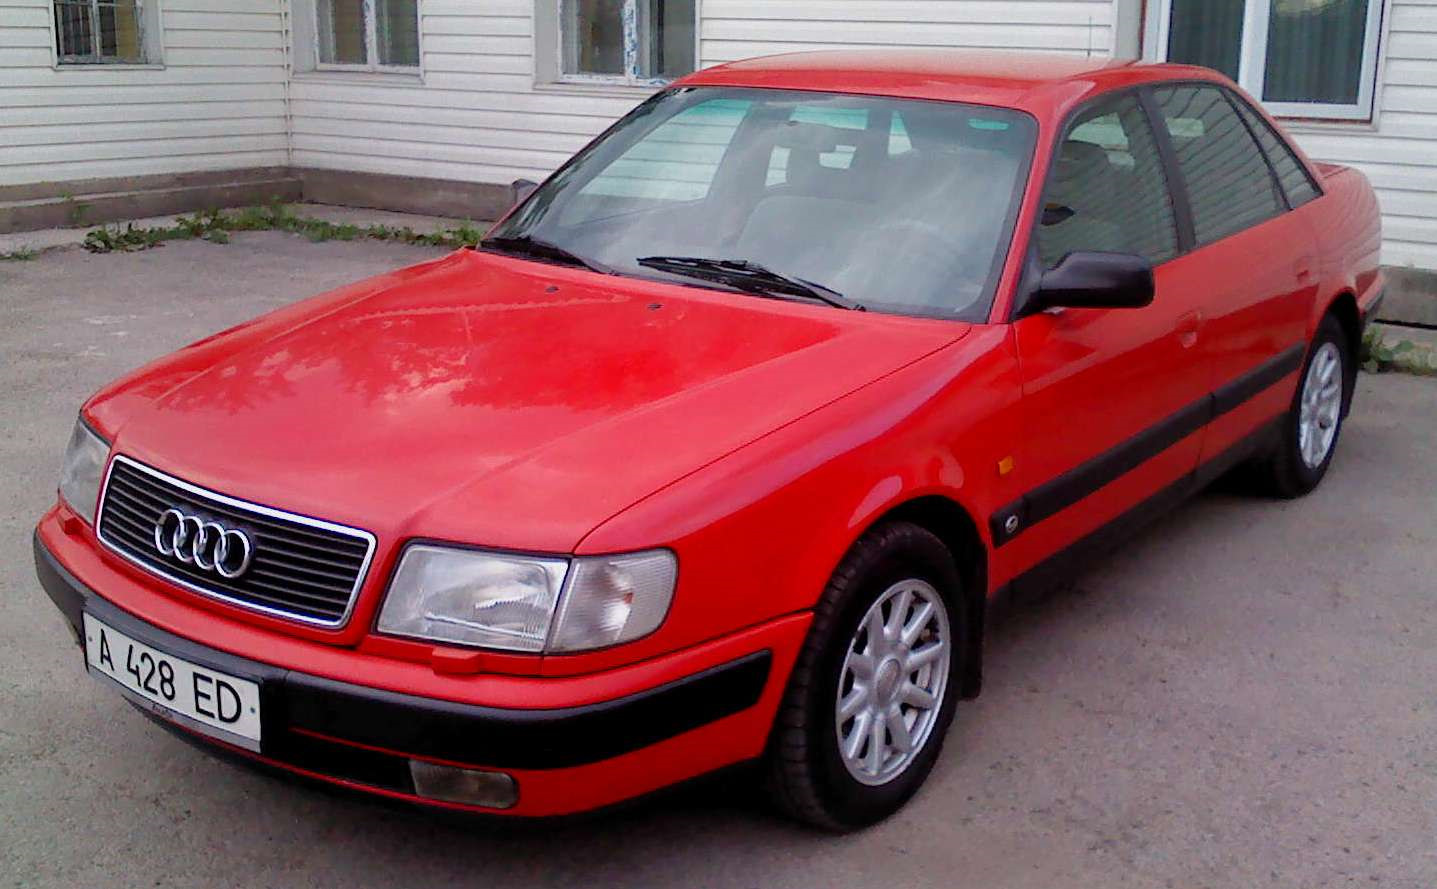 Купить ауди с4 москве. Audi 100 c4 Red. Ауди 100 с4. Ауди 100 с4 красная. Ауди 100 в 45 кузове красная.